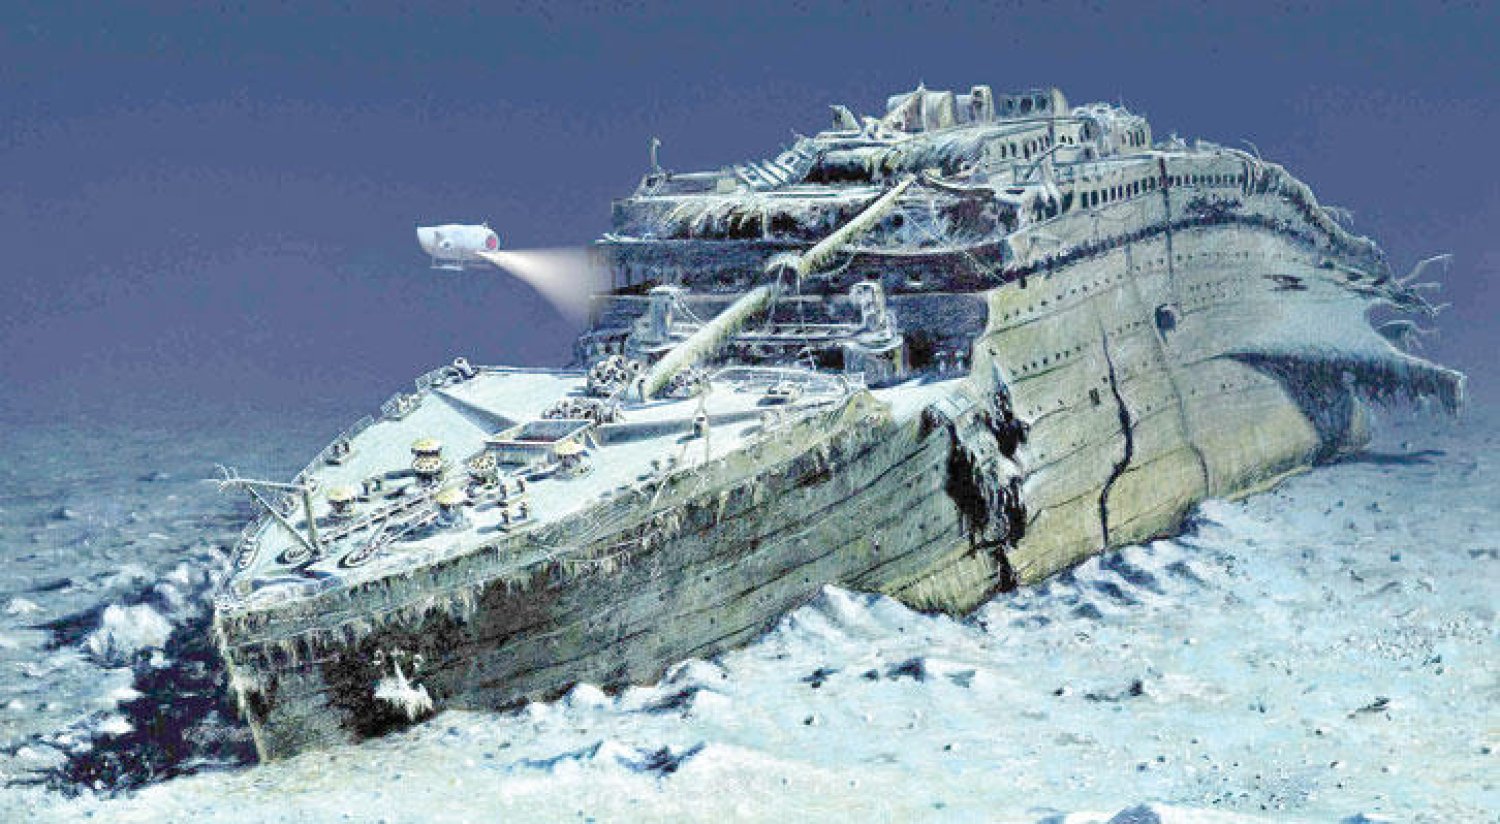 بعد 111 عاماً من الغرق.. أغراض سفينة «تيتانيك» للبيع في مزاد